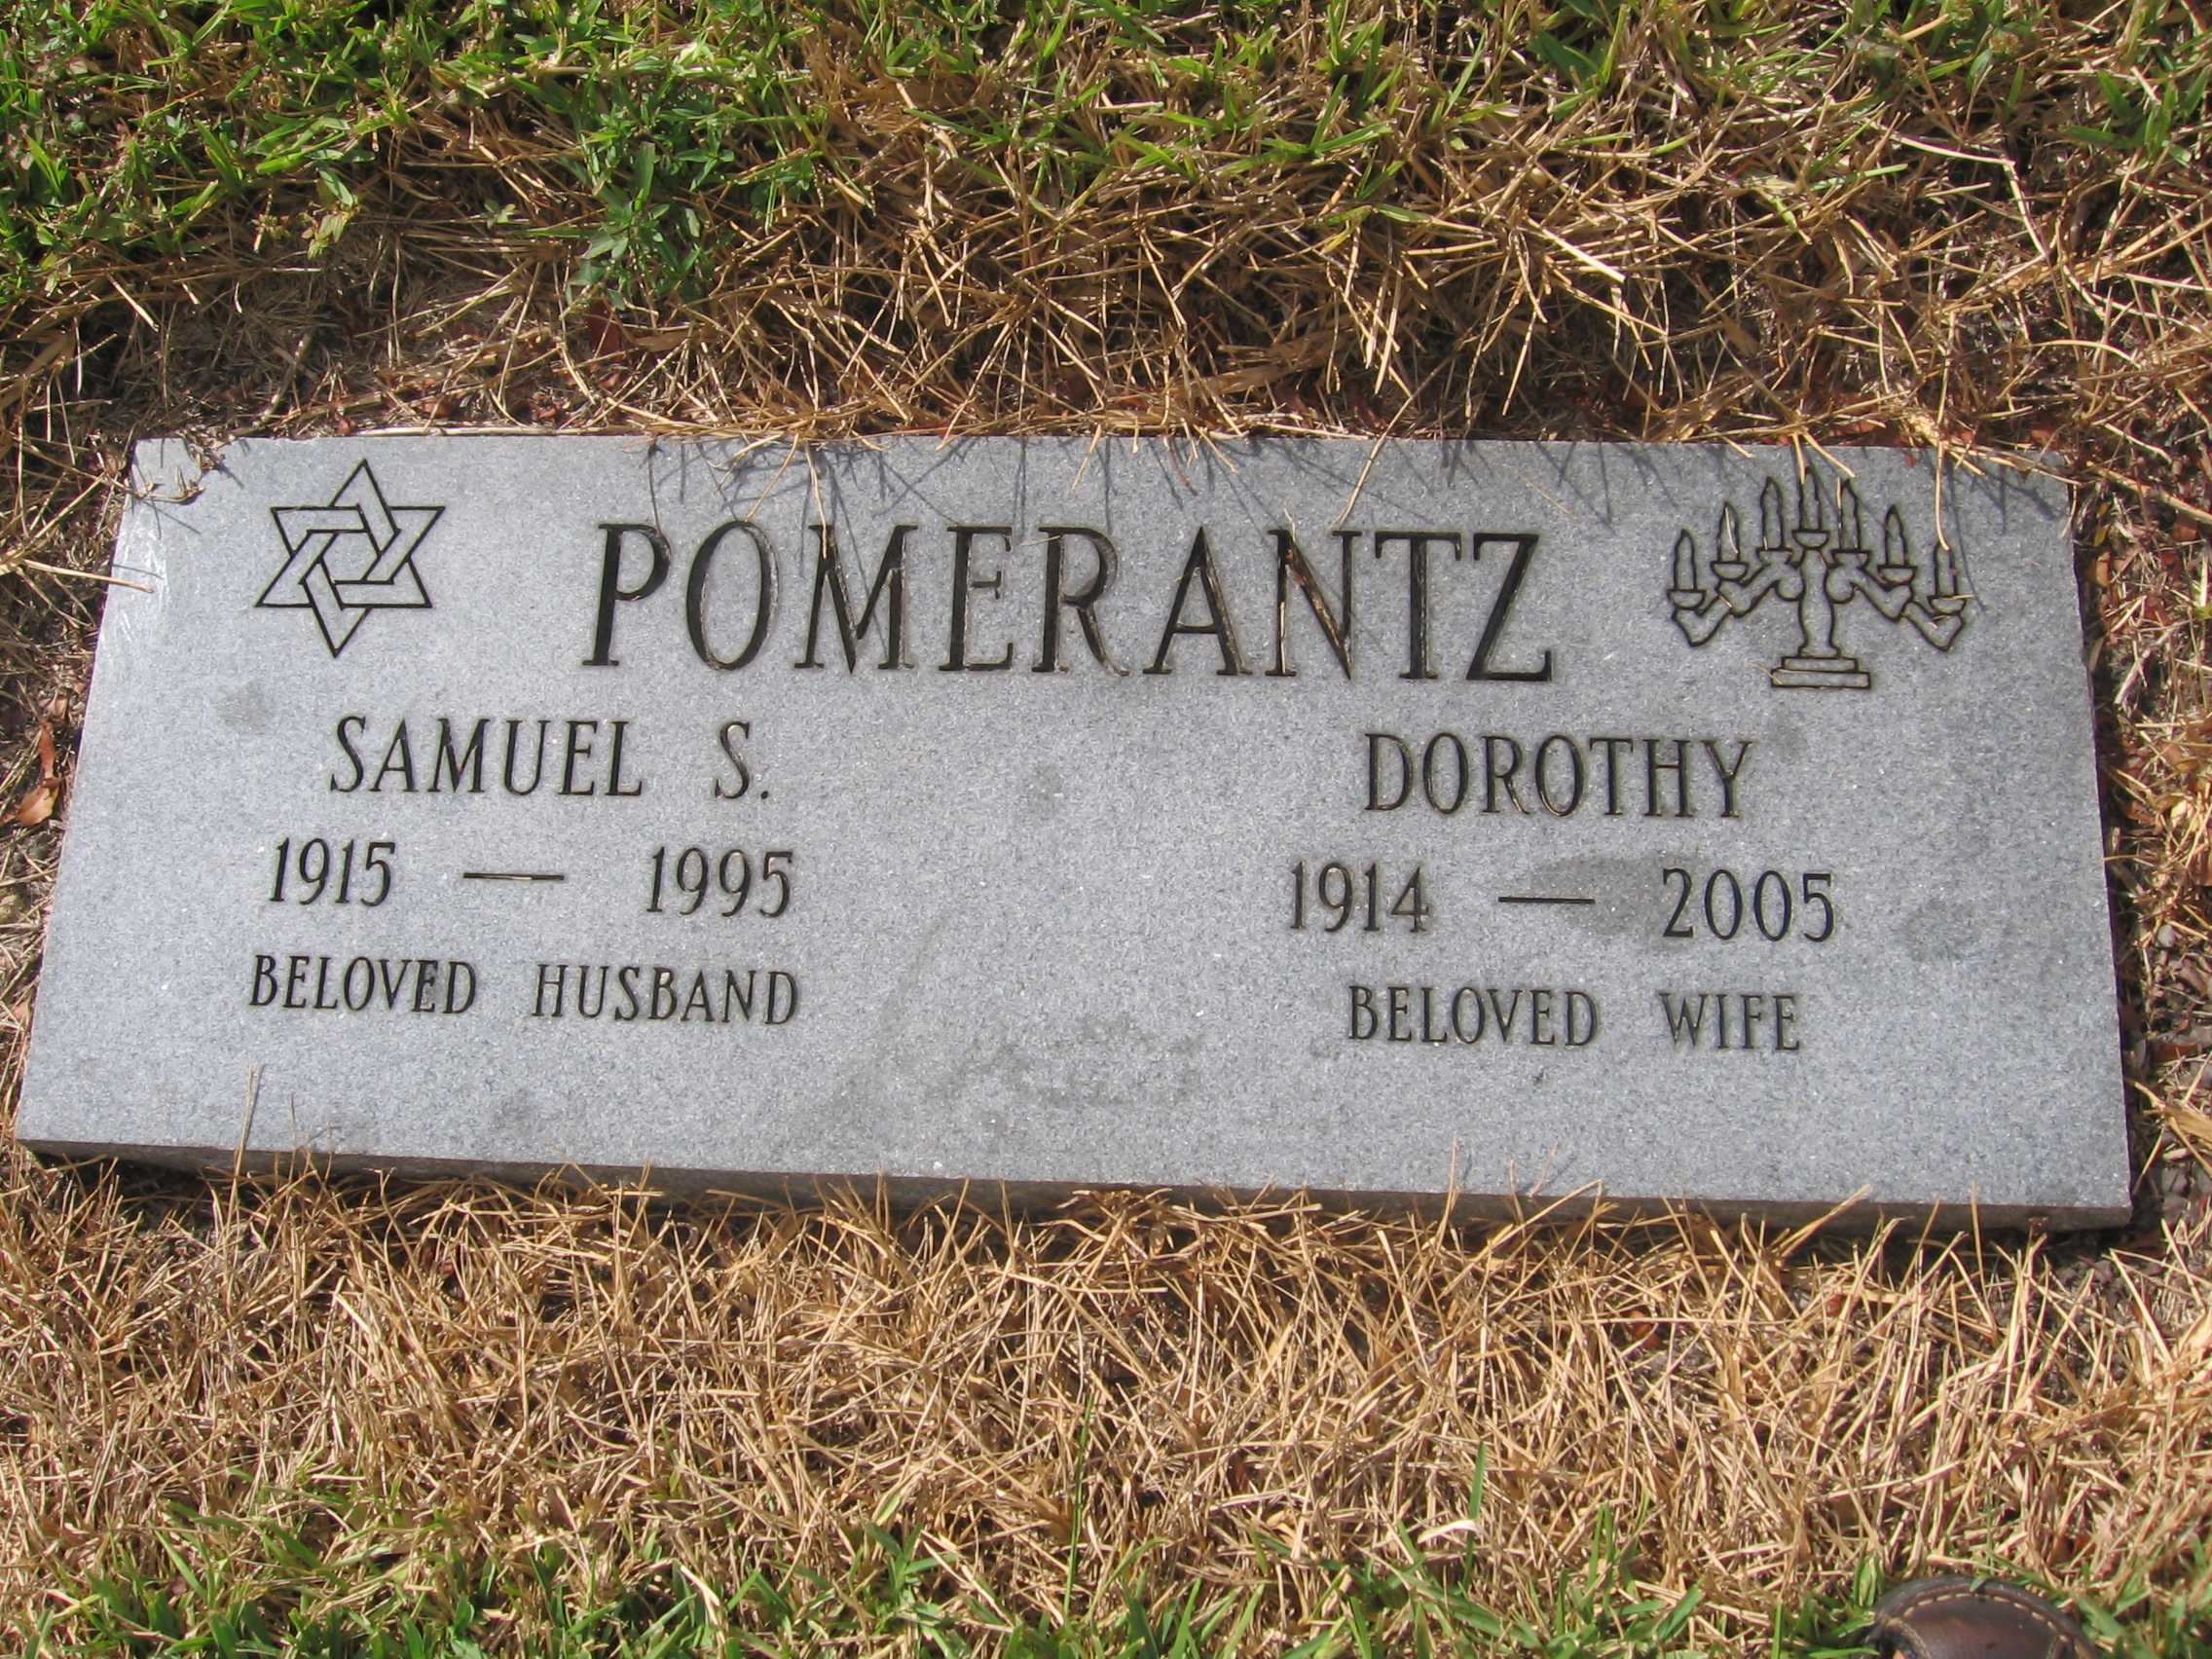 Samuel S Pomerantz